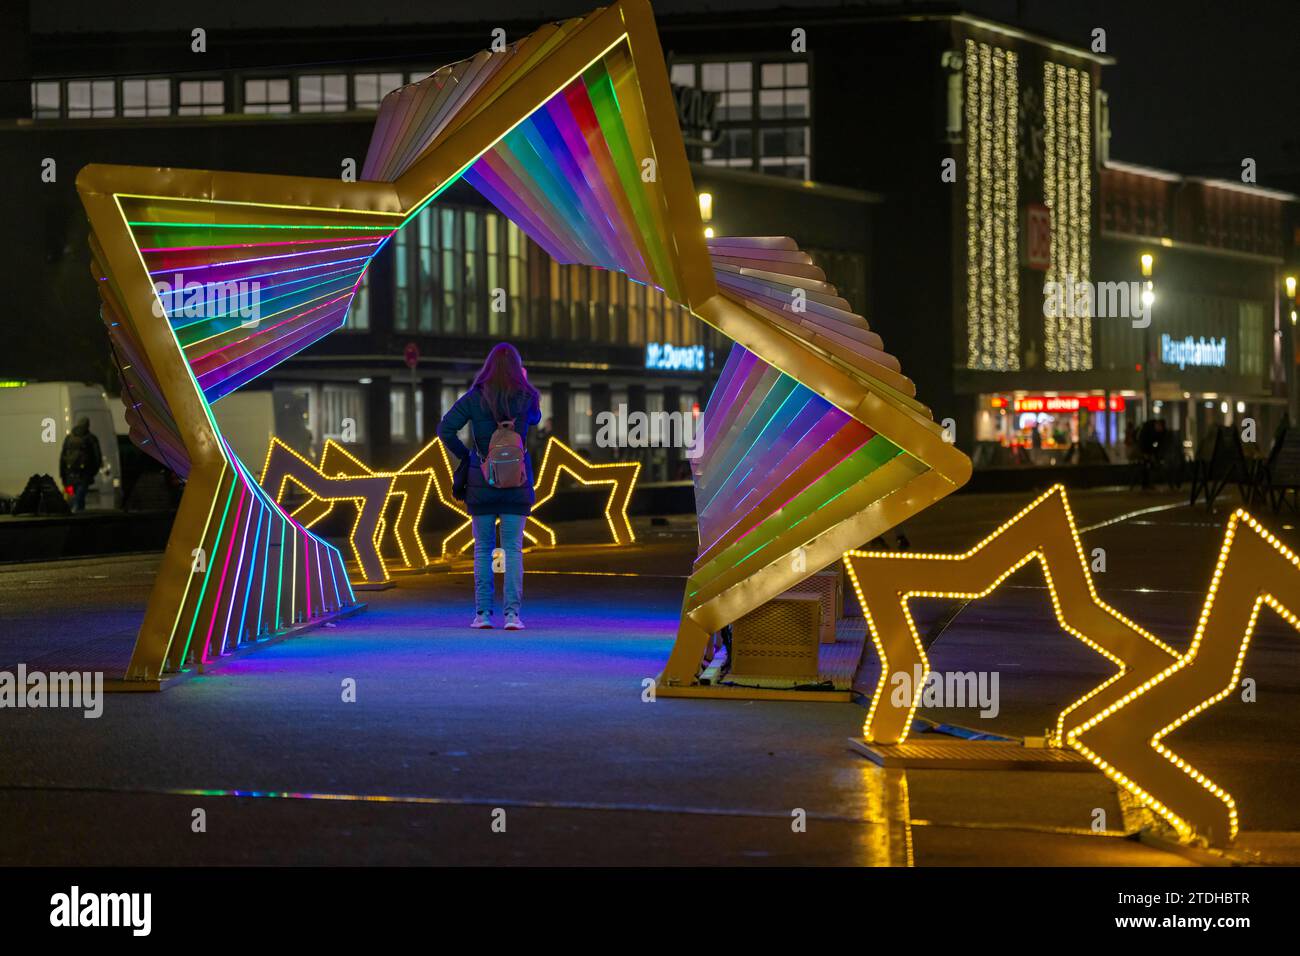 Vorweihnachtszeit, Portsmouthplatz, Bahnhofsvorplatz, begehbare Lichtinstallation in Form von Sternen, Weihnachtsbeleuchtung, Duisburg, NRW, Deutschland Stockfoto